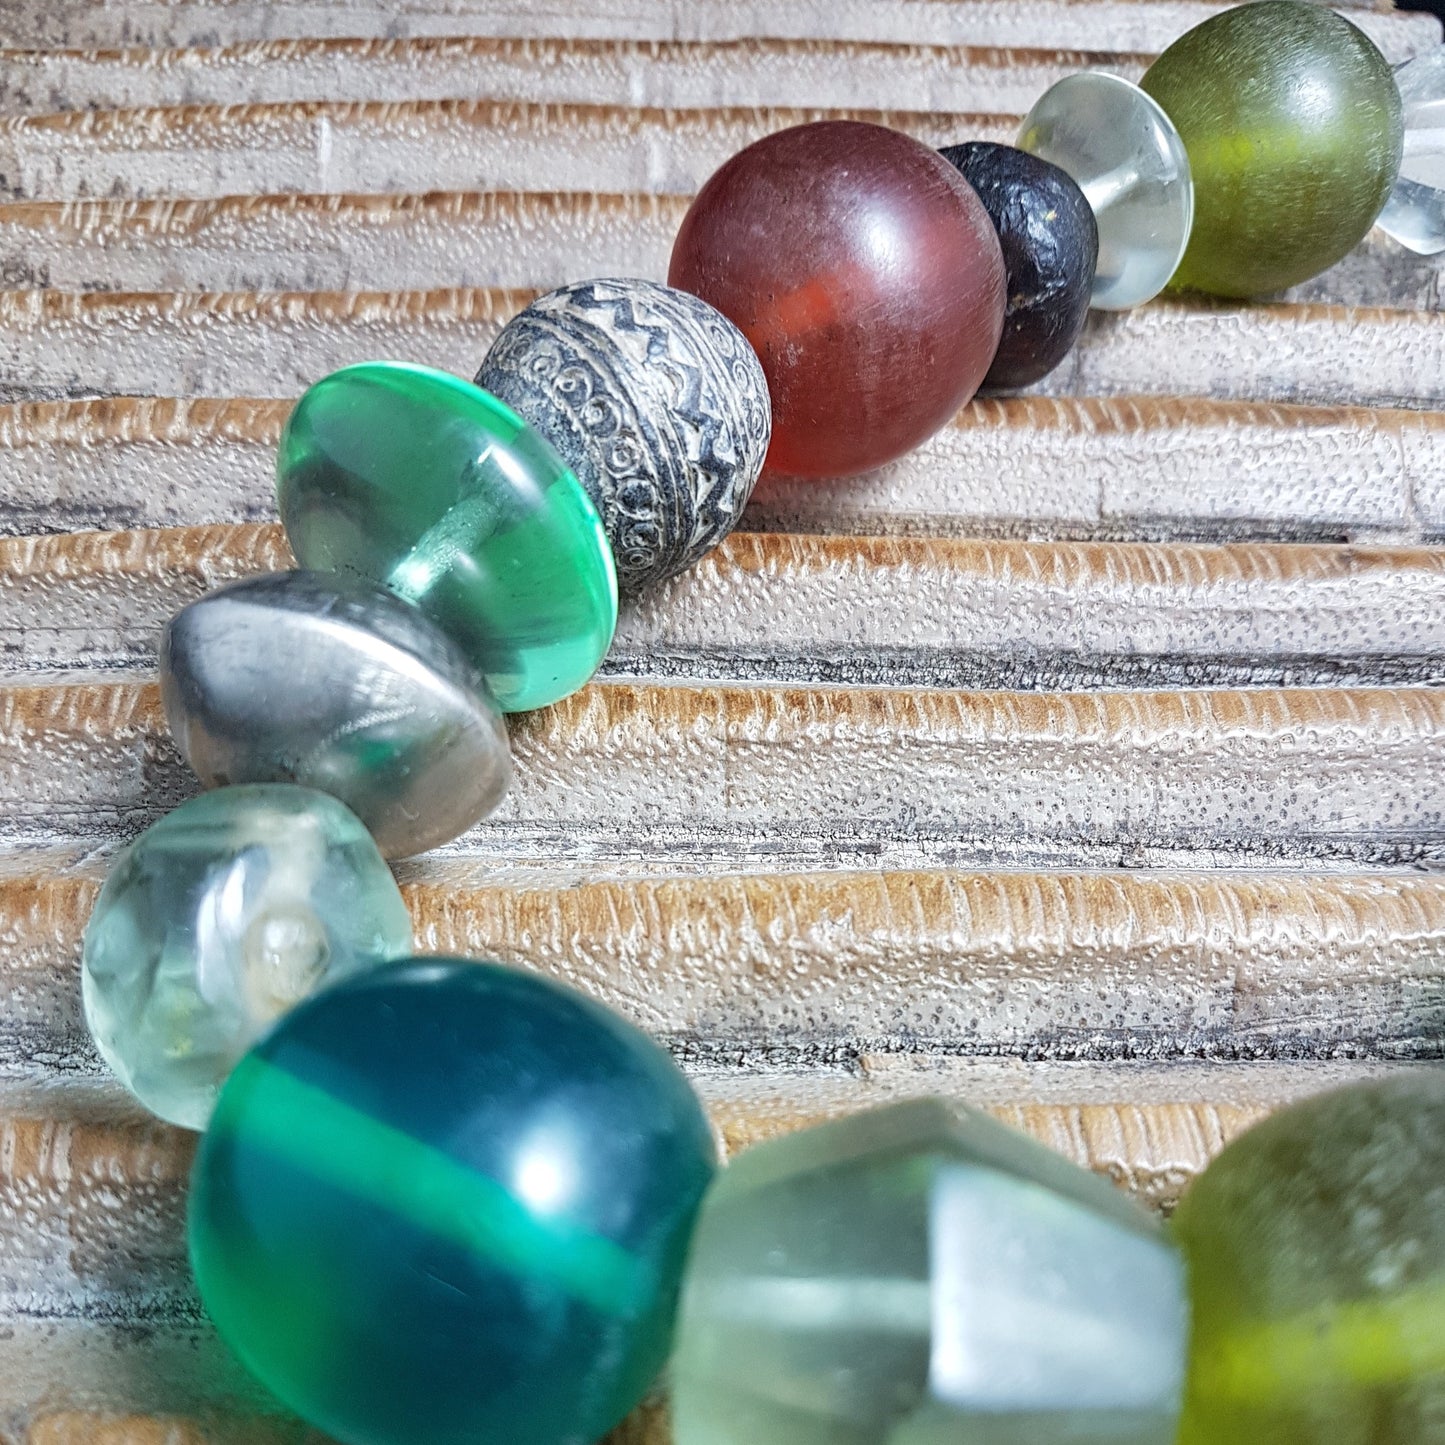 Handgearbeitete Kette mit Glas- und Harzperlen in Grüntönen aus Indonesien, afrikanischen Spinnwirtel-Perlen aus Ton und hohlen Metallperlen der Tuareg mit Silberverschluss